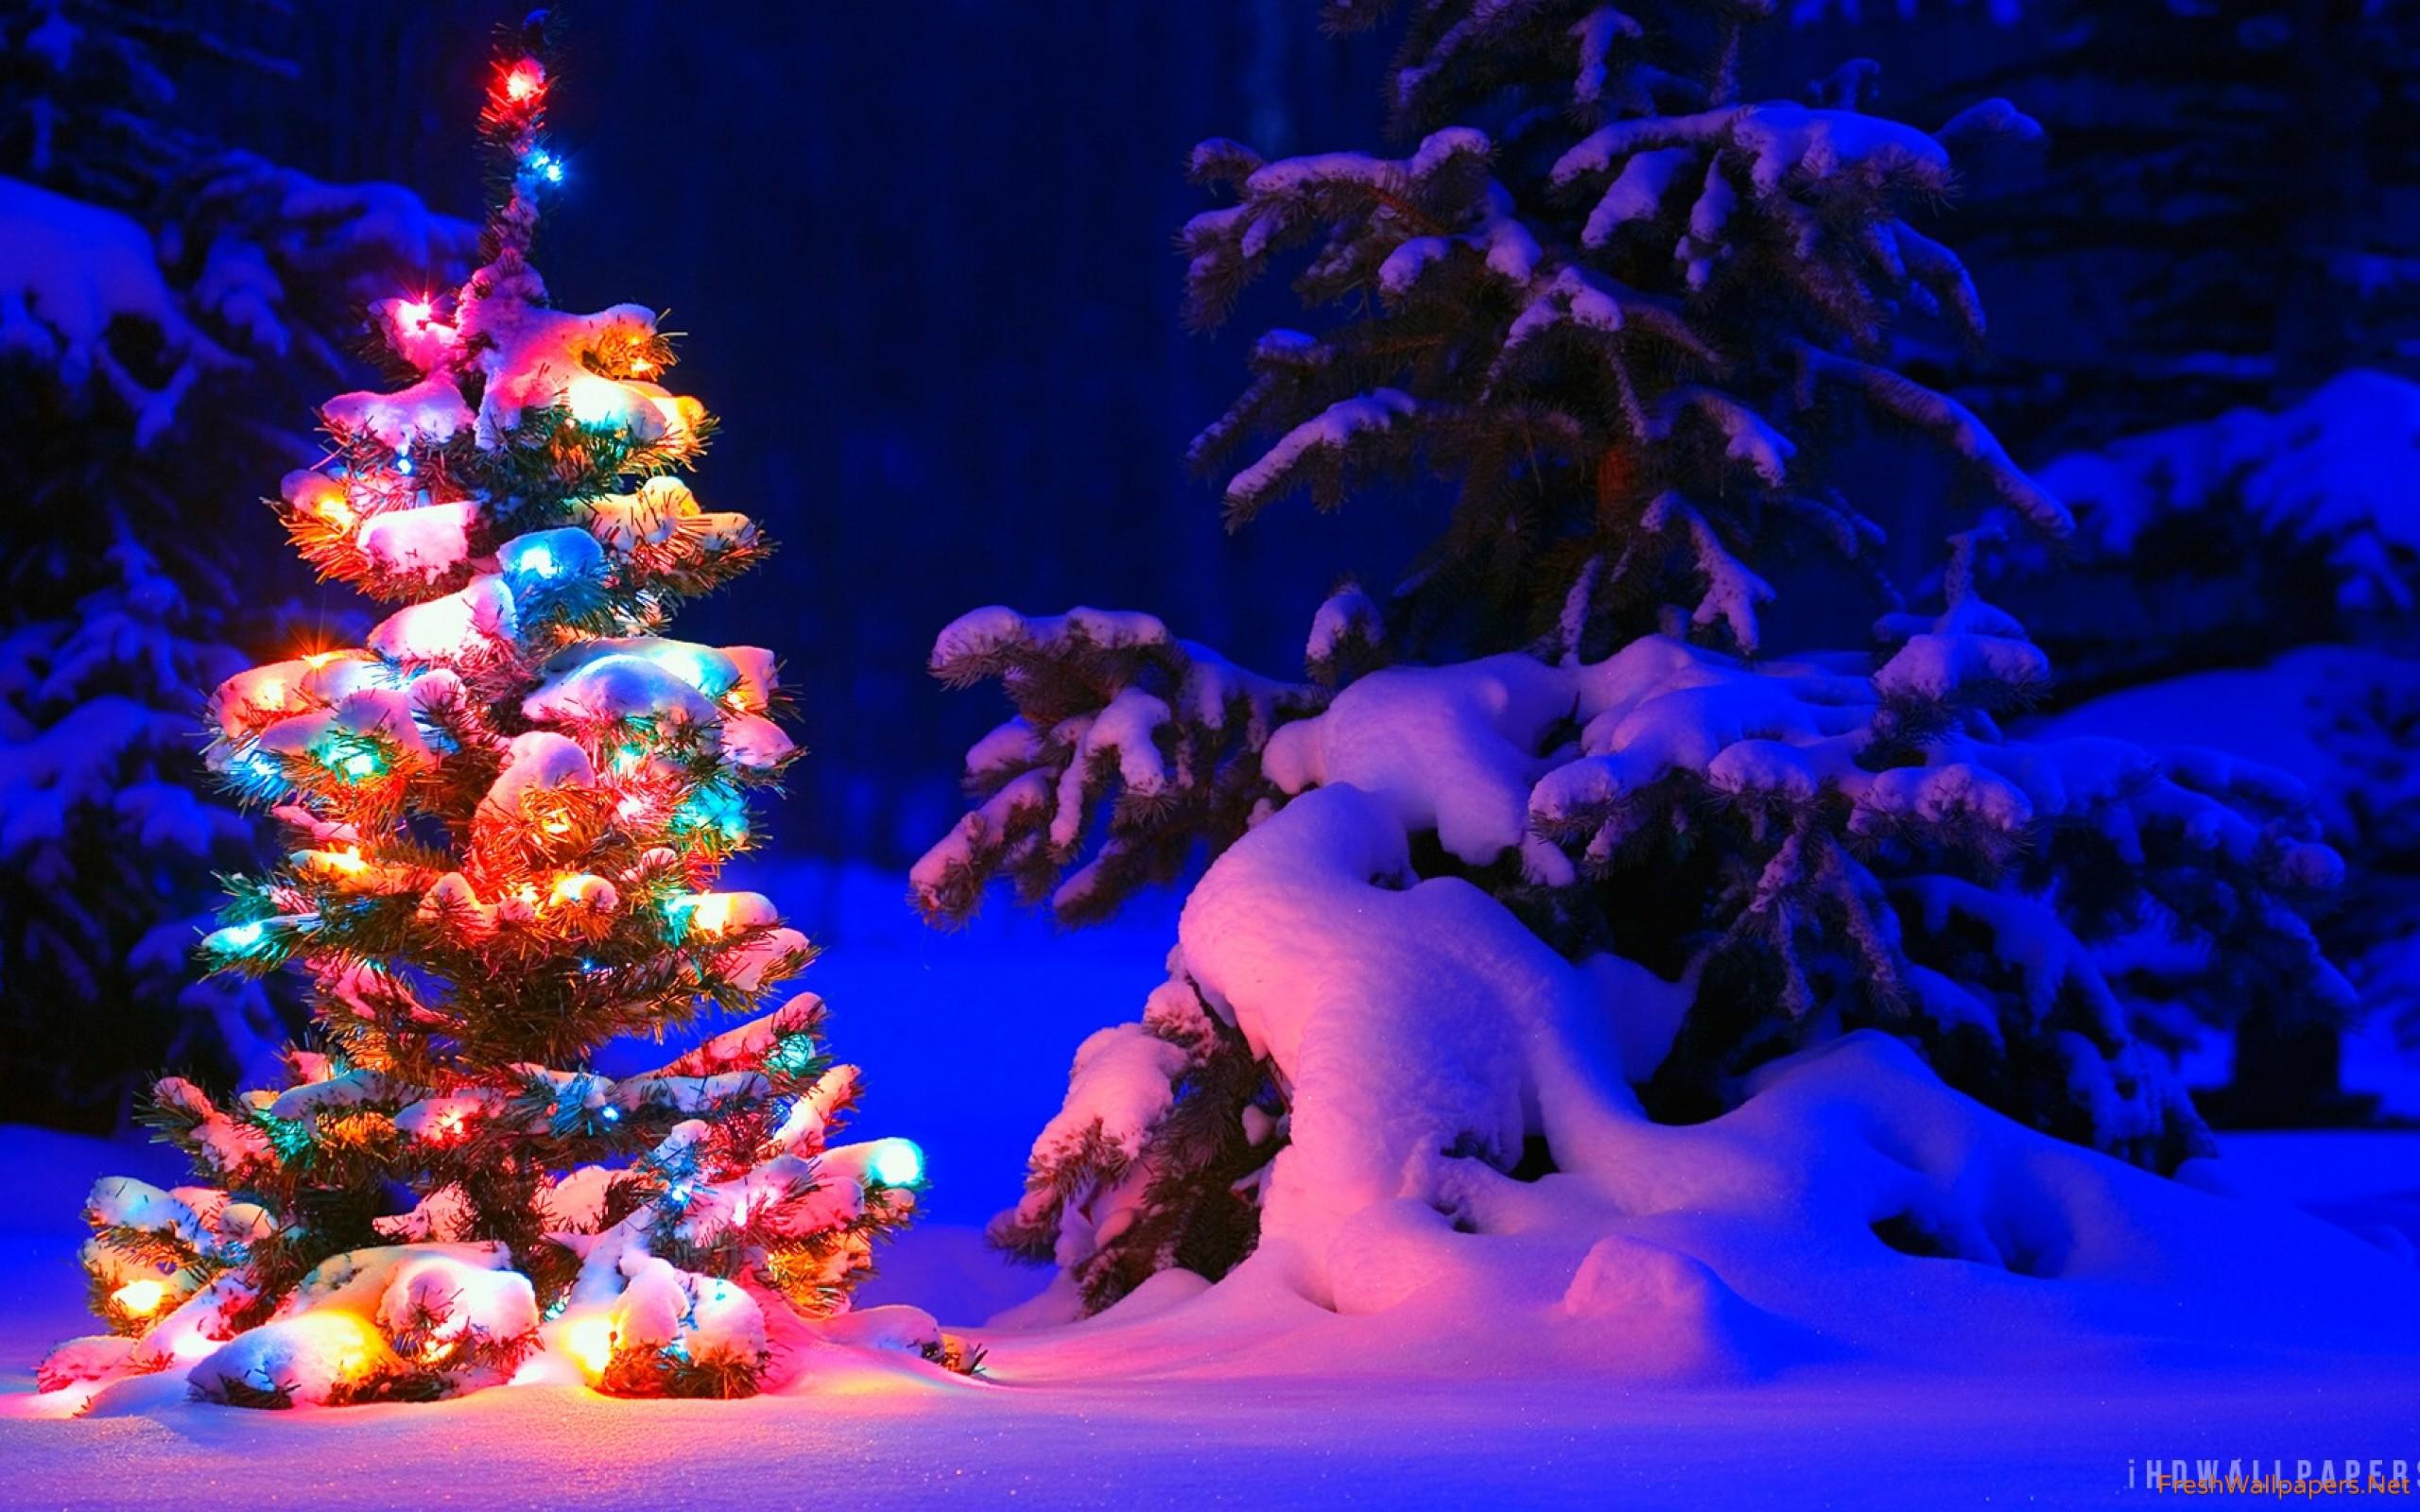 Snow And Lights On Christmas Tree Wallpaper